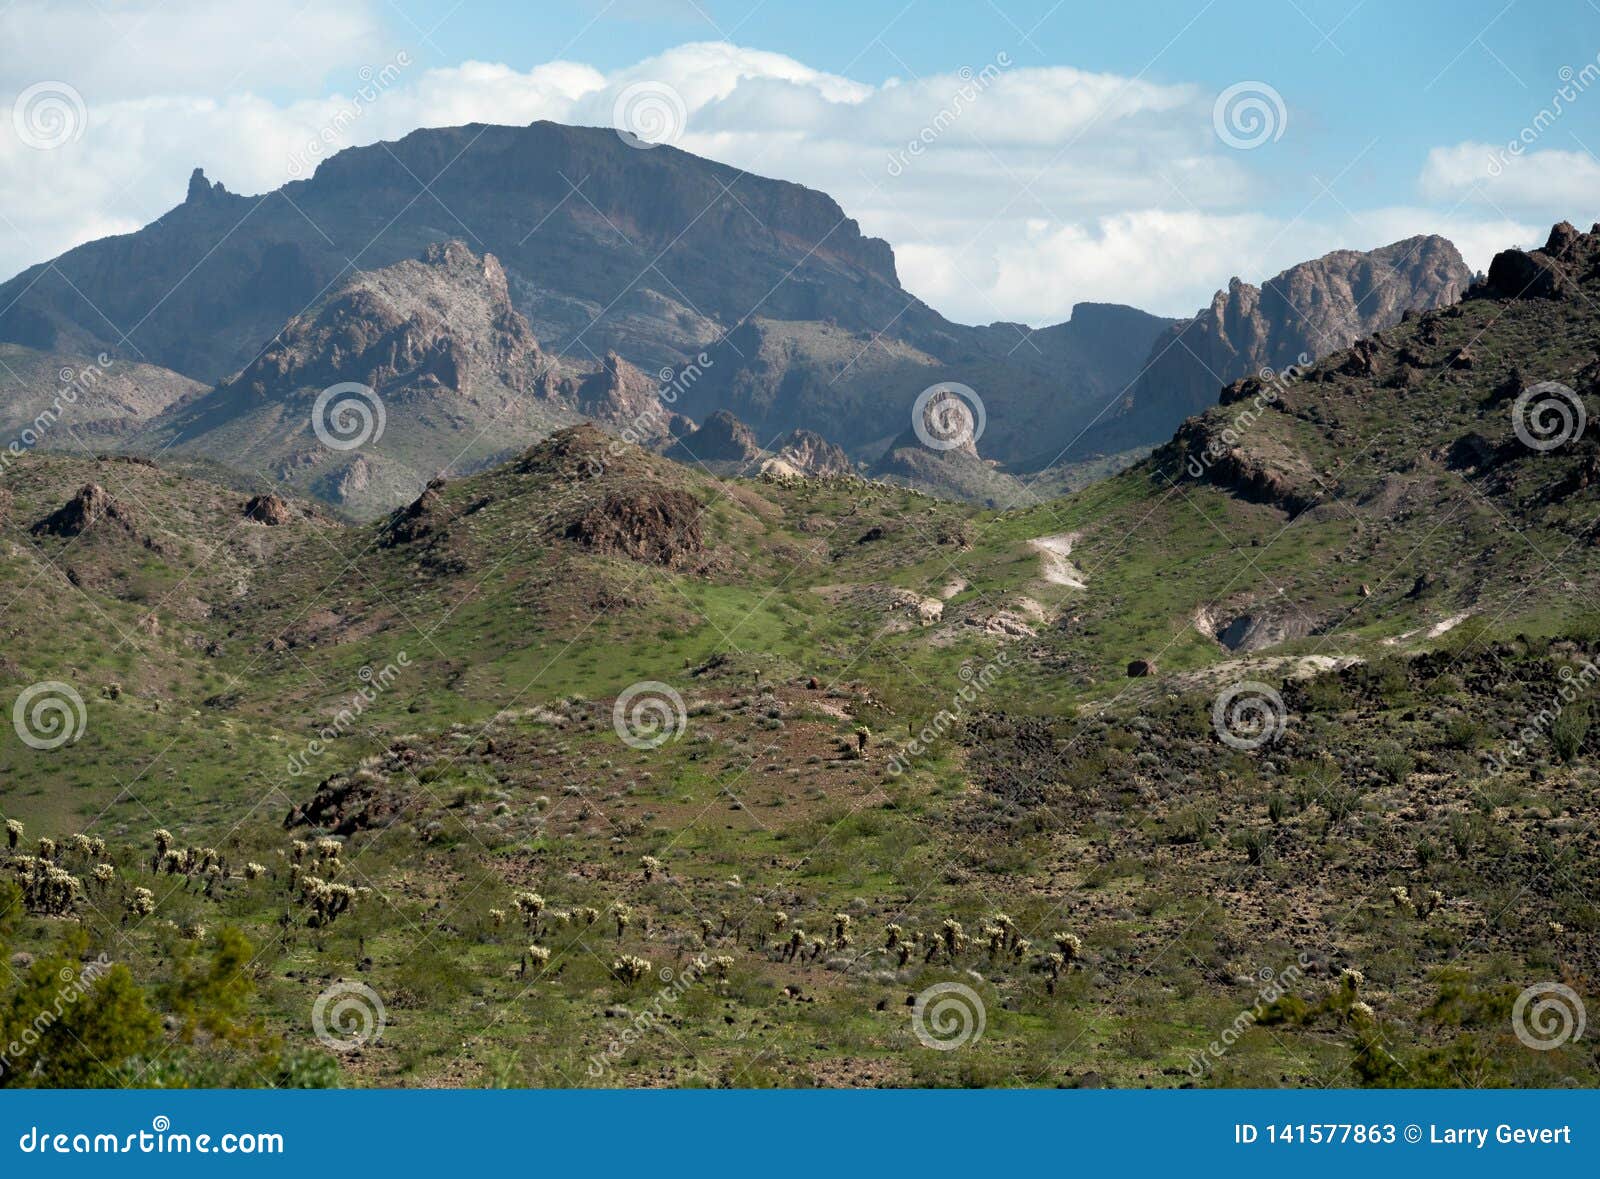 the black mountains, western arizona